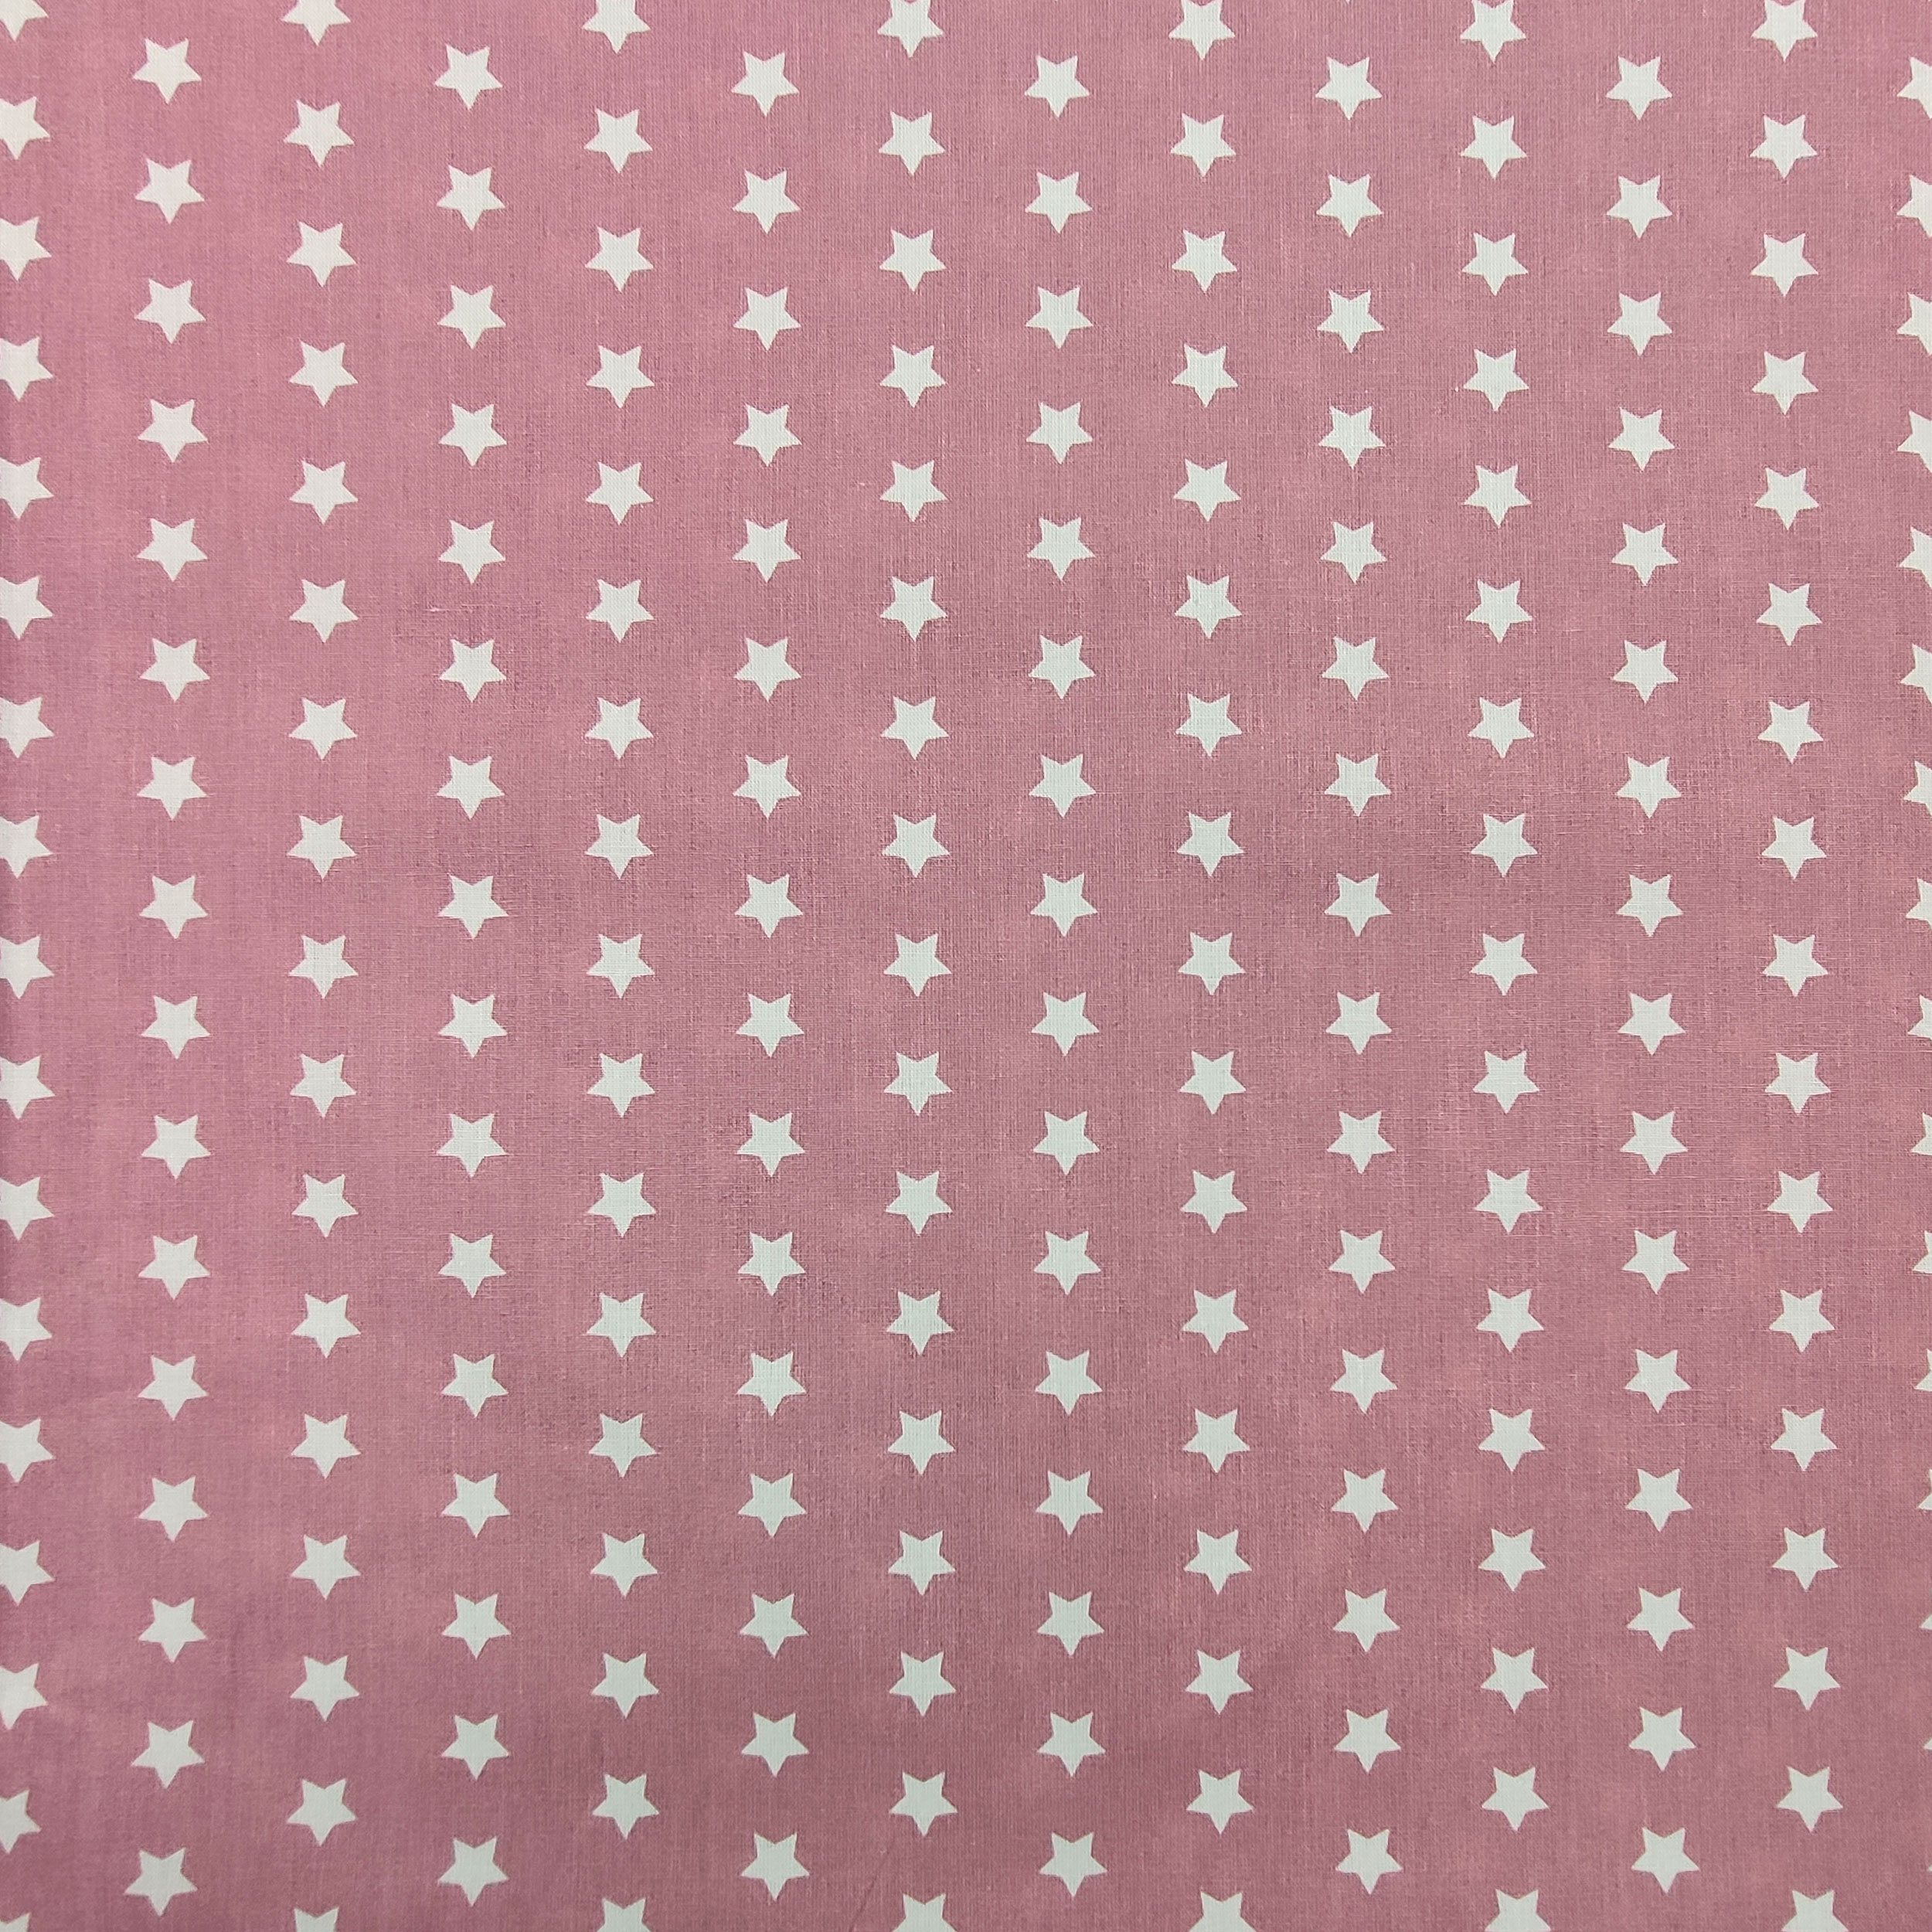 tessuto leggero di cotone rosa antico stelle bianche